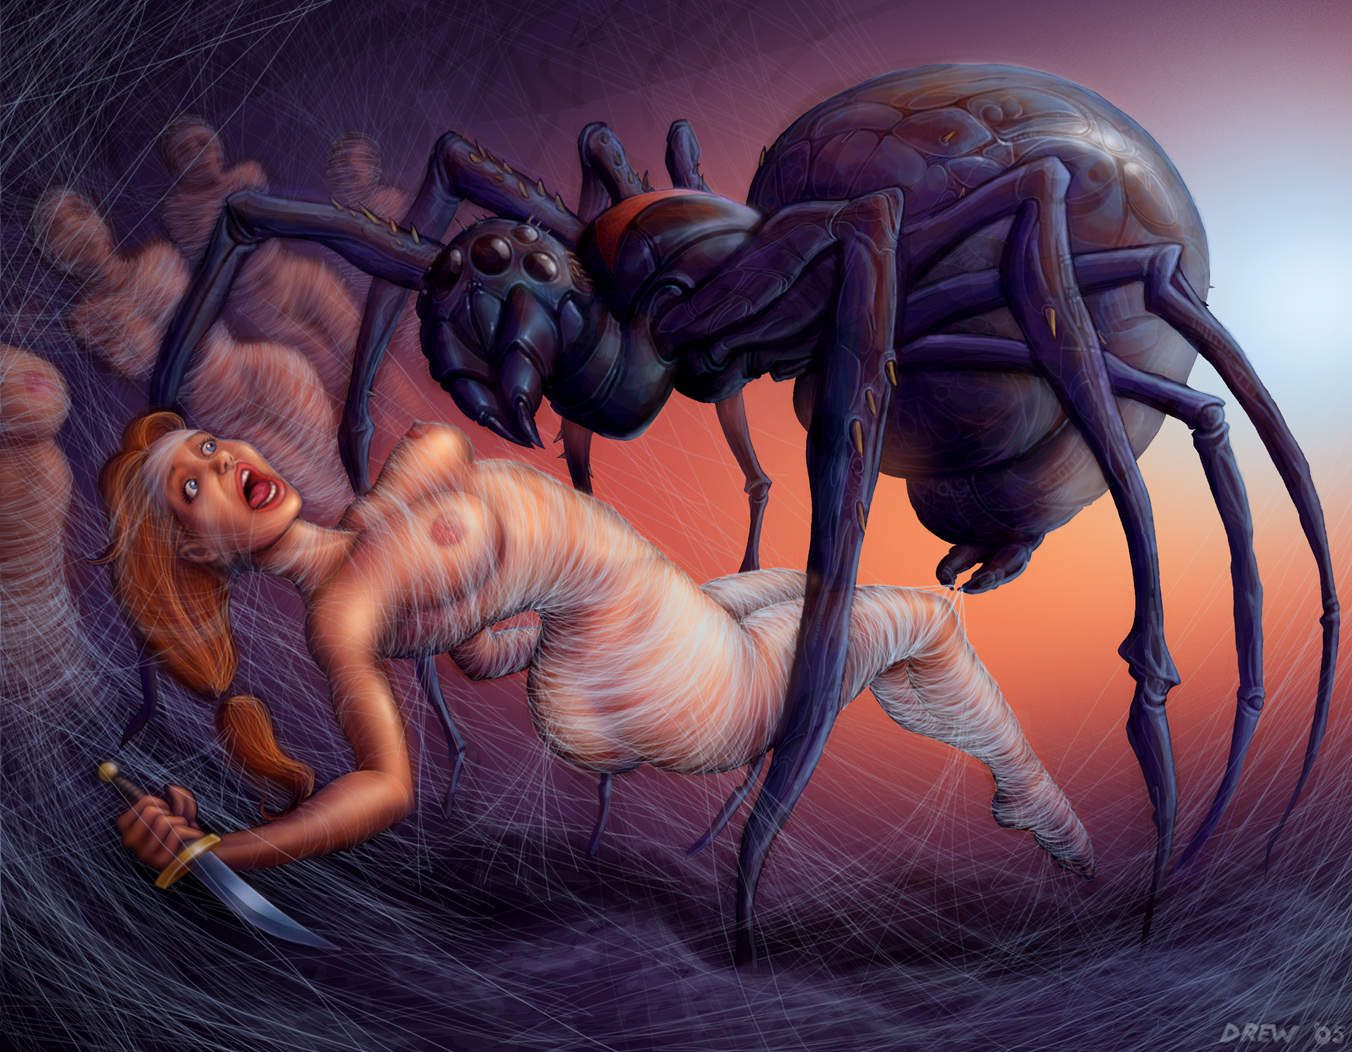 жестокий секс, огромный паук поймал рыжую девушку в свою паутину и готовится впрыснуть свое семя в ее вагину